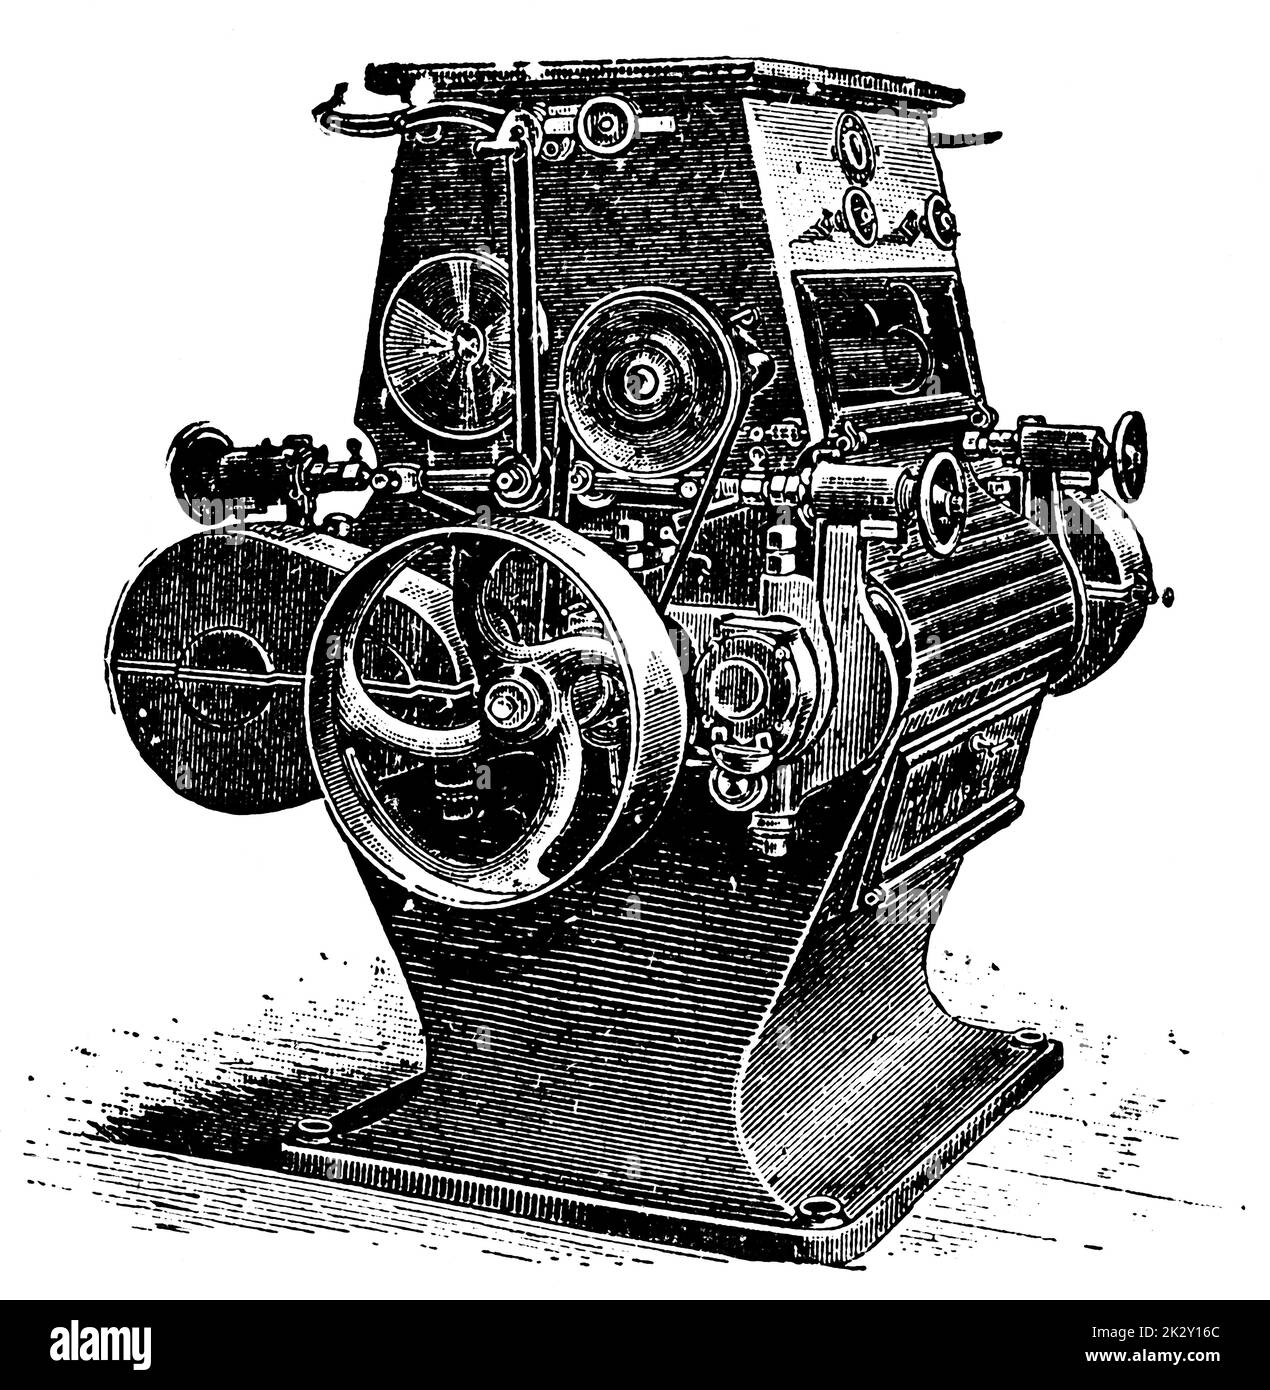 Broyeur électrique industriel, modèle 1894. Illustration du 19e siècle. Allemagne. Arrière-plan blanc. Banque D'Images